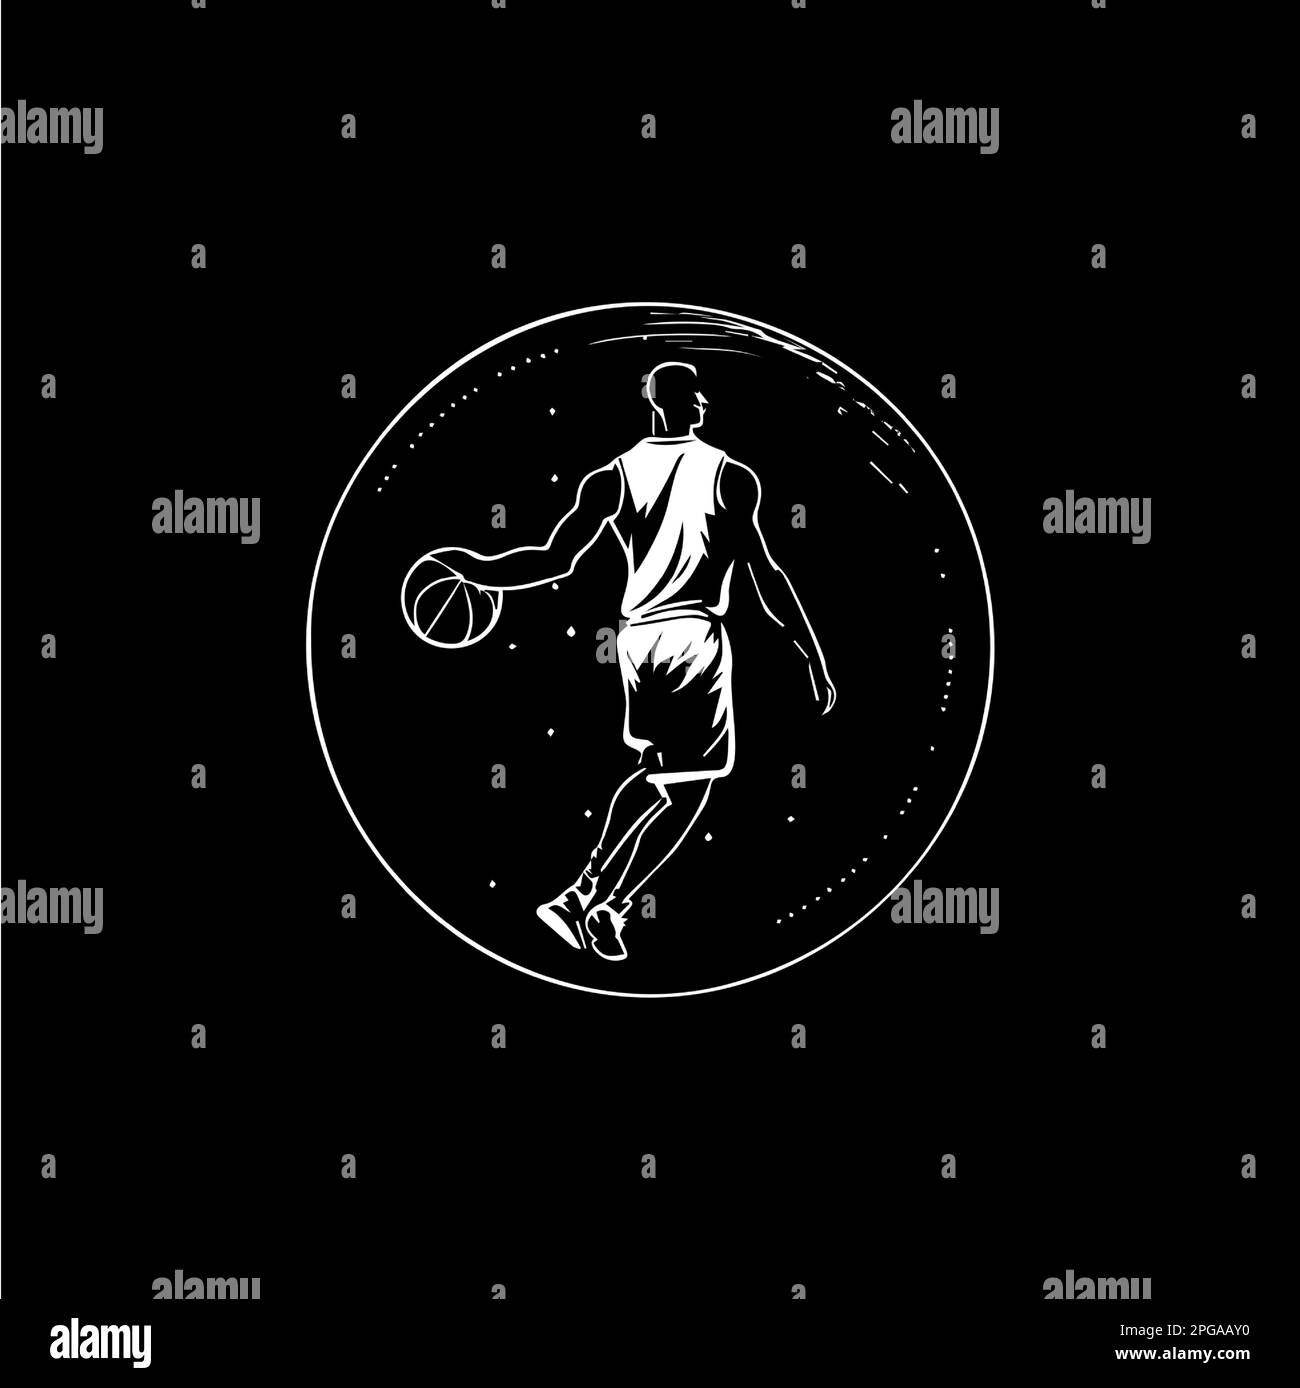 Weißes Emblem des Basketballspielers, Dribbeln mit dem Ball, Action-Spieler-Symbol, Logo-Vorlage, Handzeichn-Tattoo-Skizze auf schwarzem Hintergrund Stock Vektor